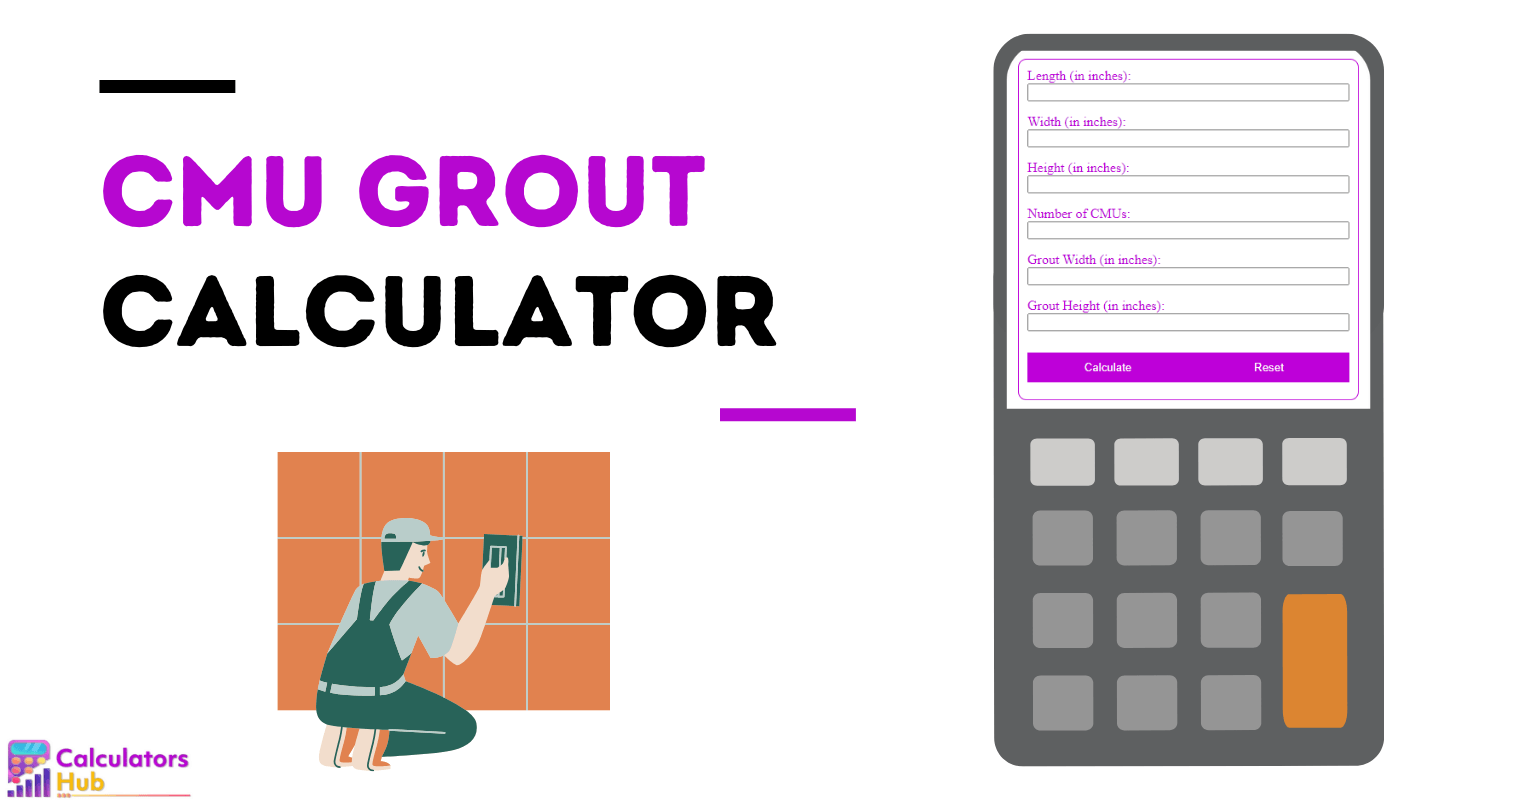 CMU Grout Calculator